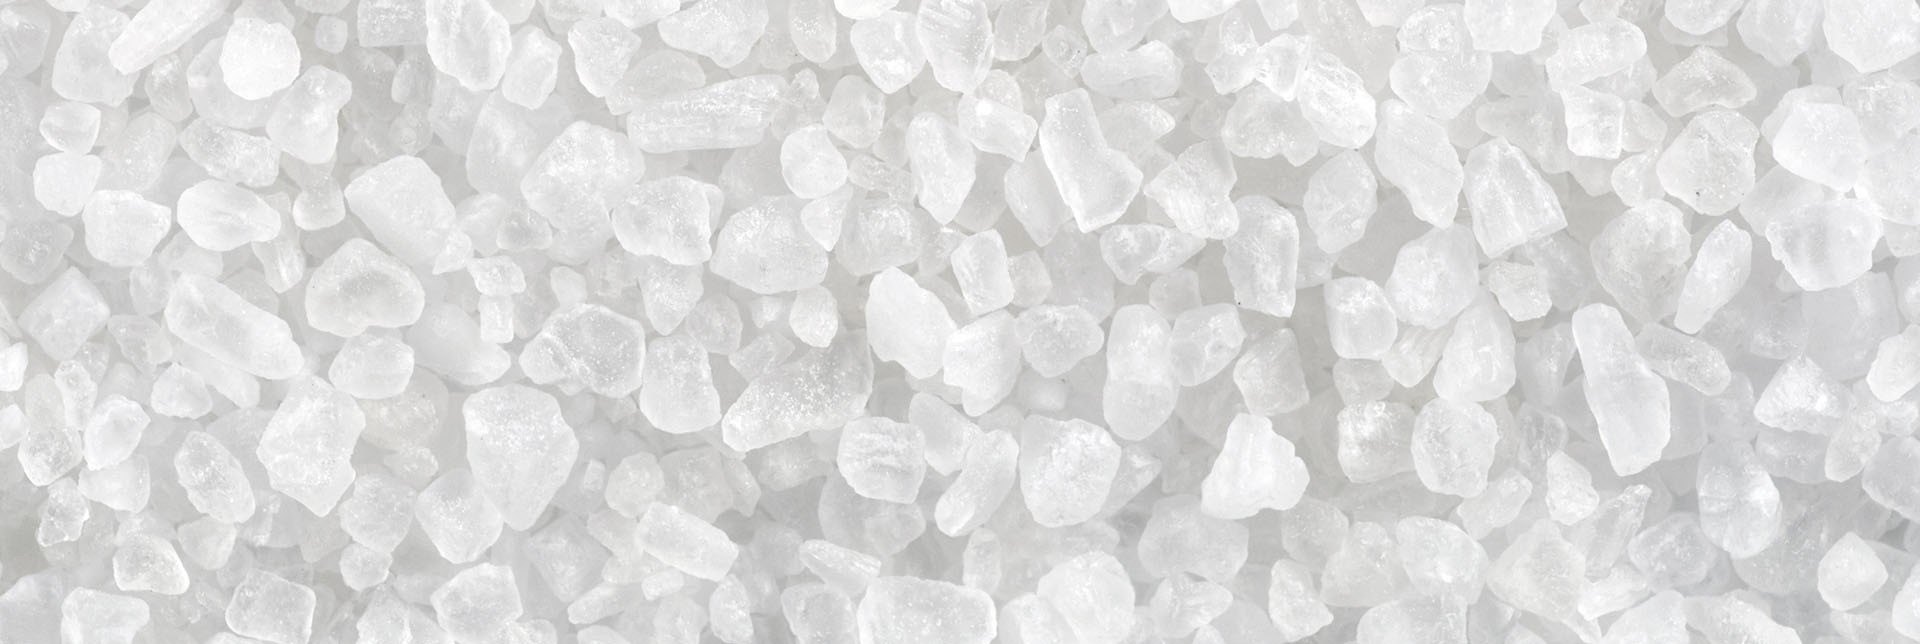 Koju vrstu soli koristite u bazenu? srbija